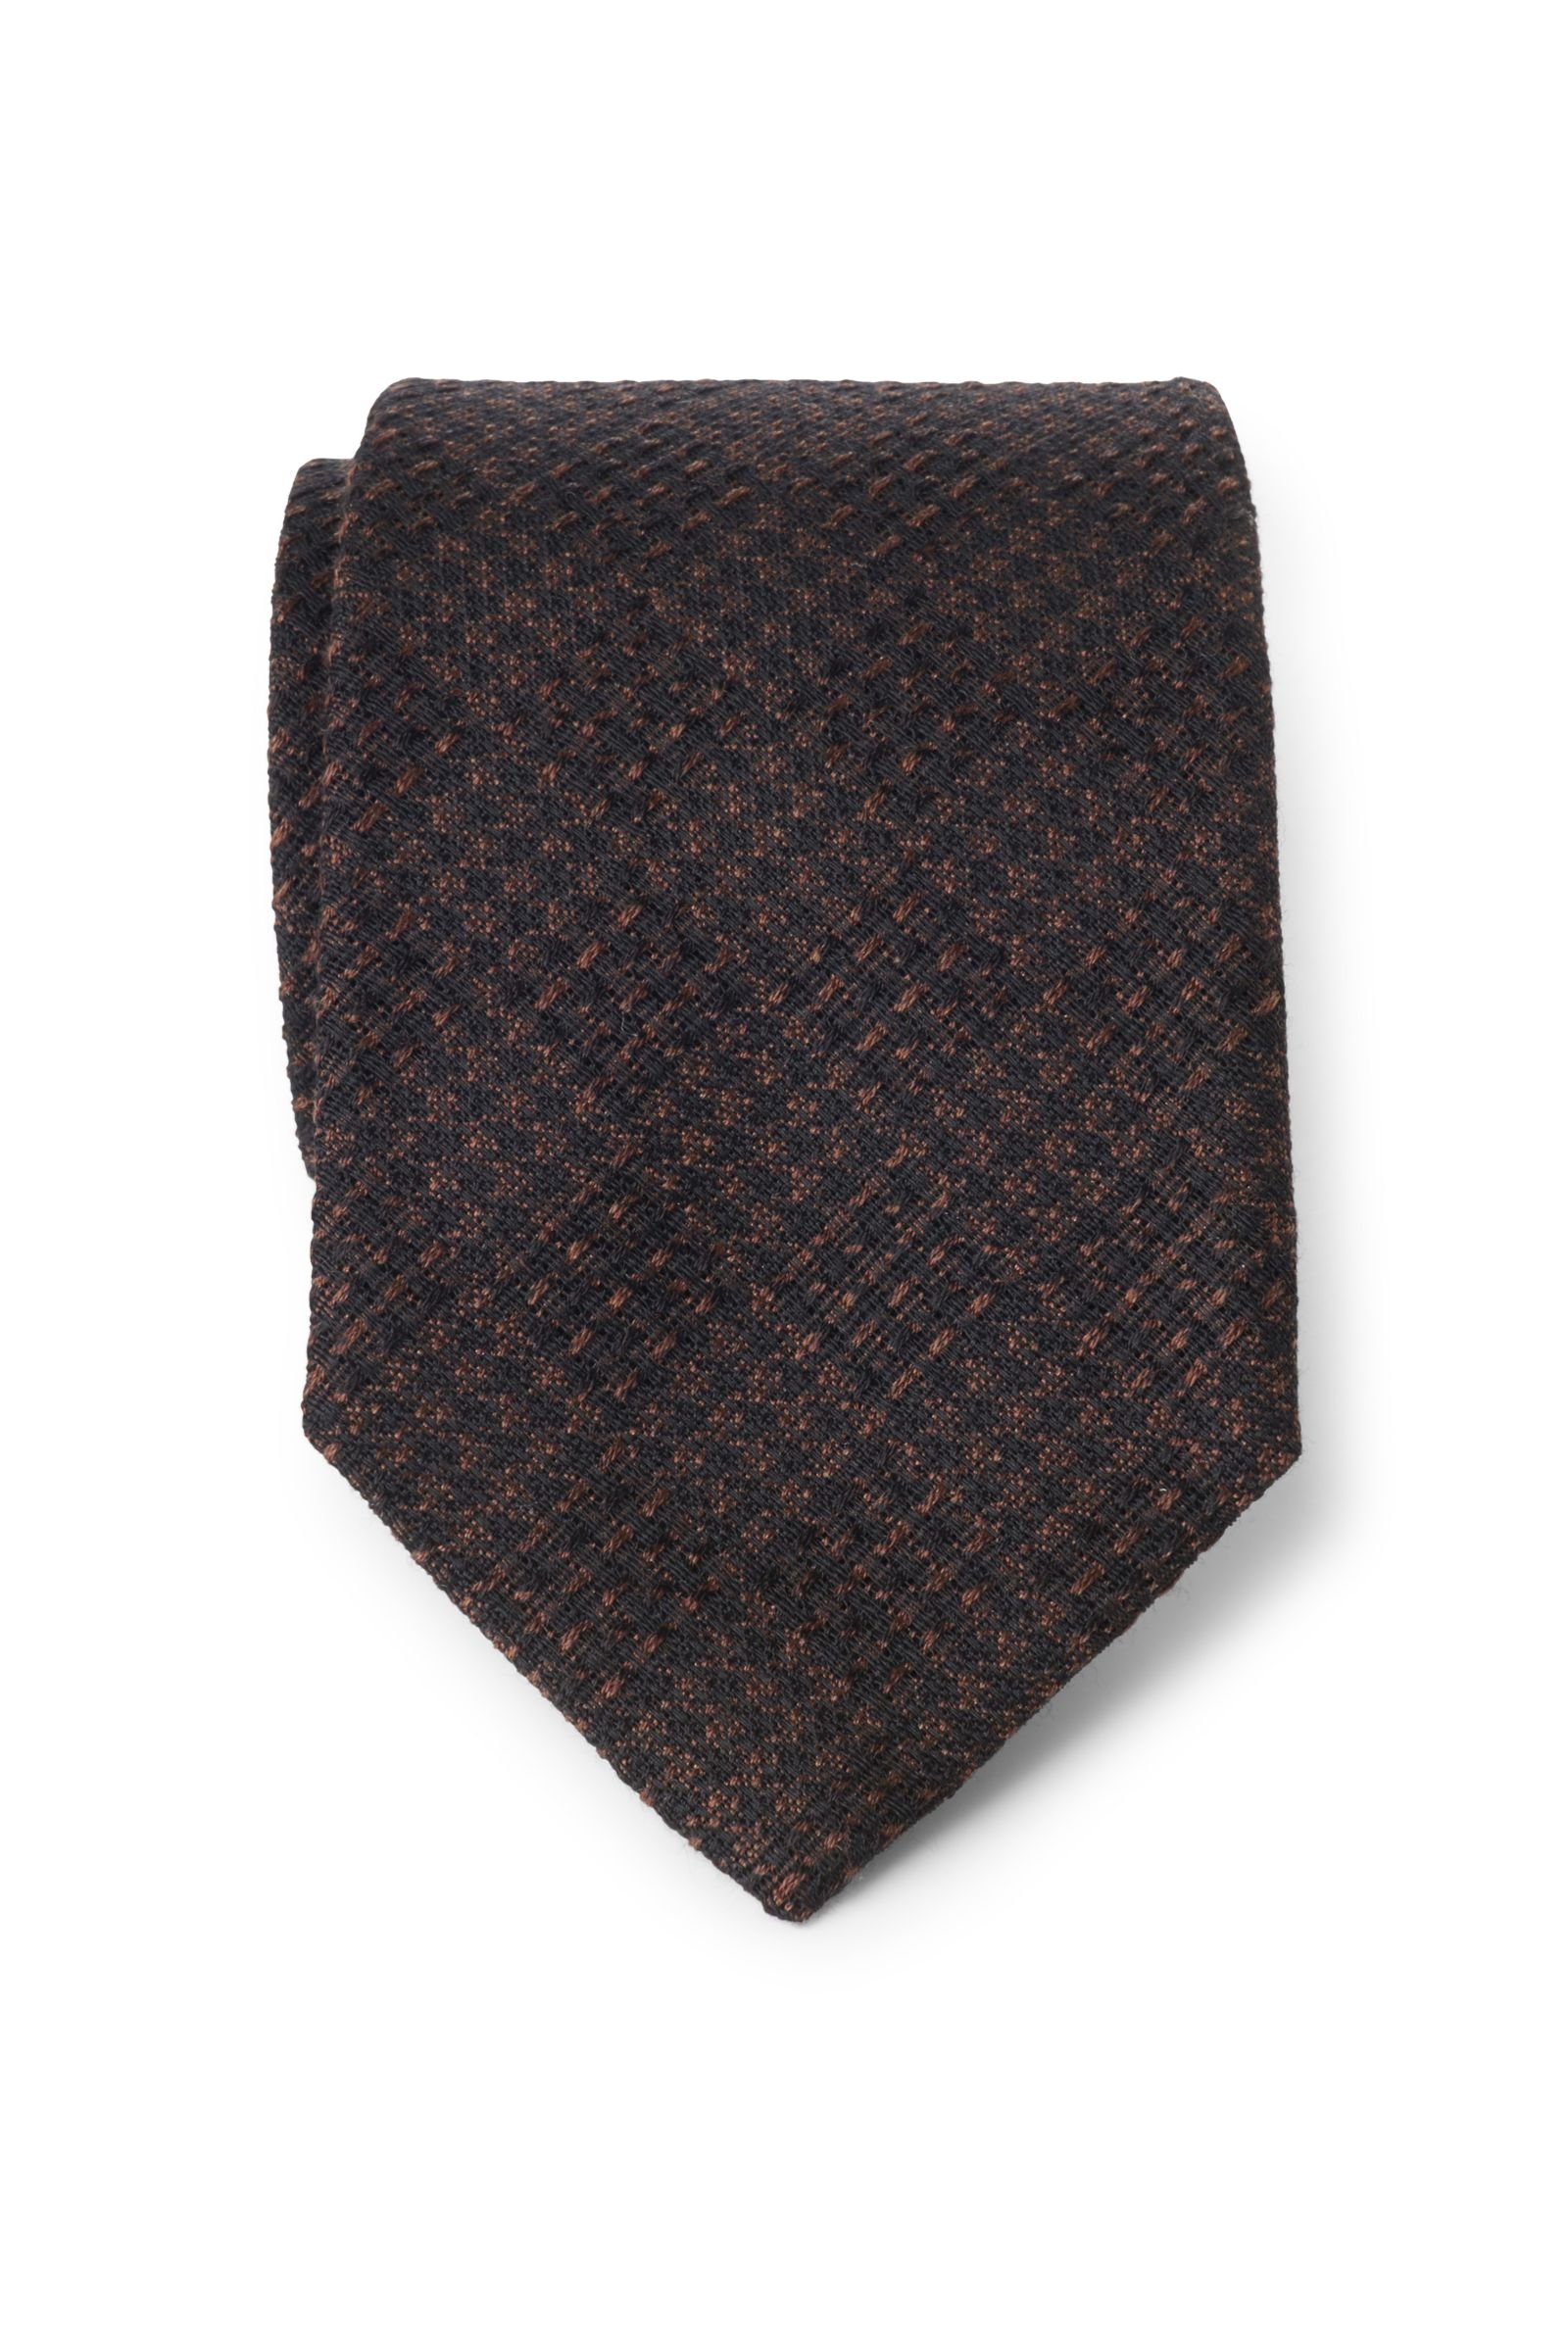 Tie dark brown/brown patterned